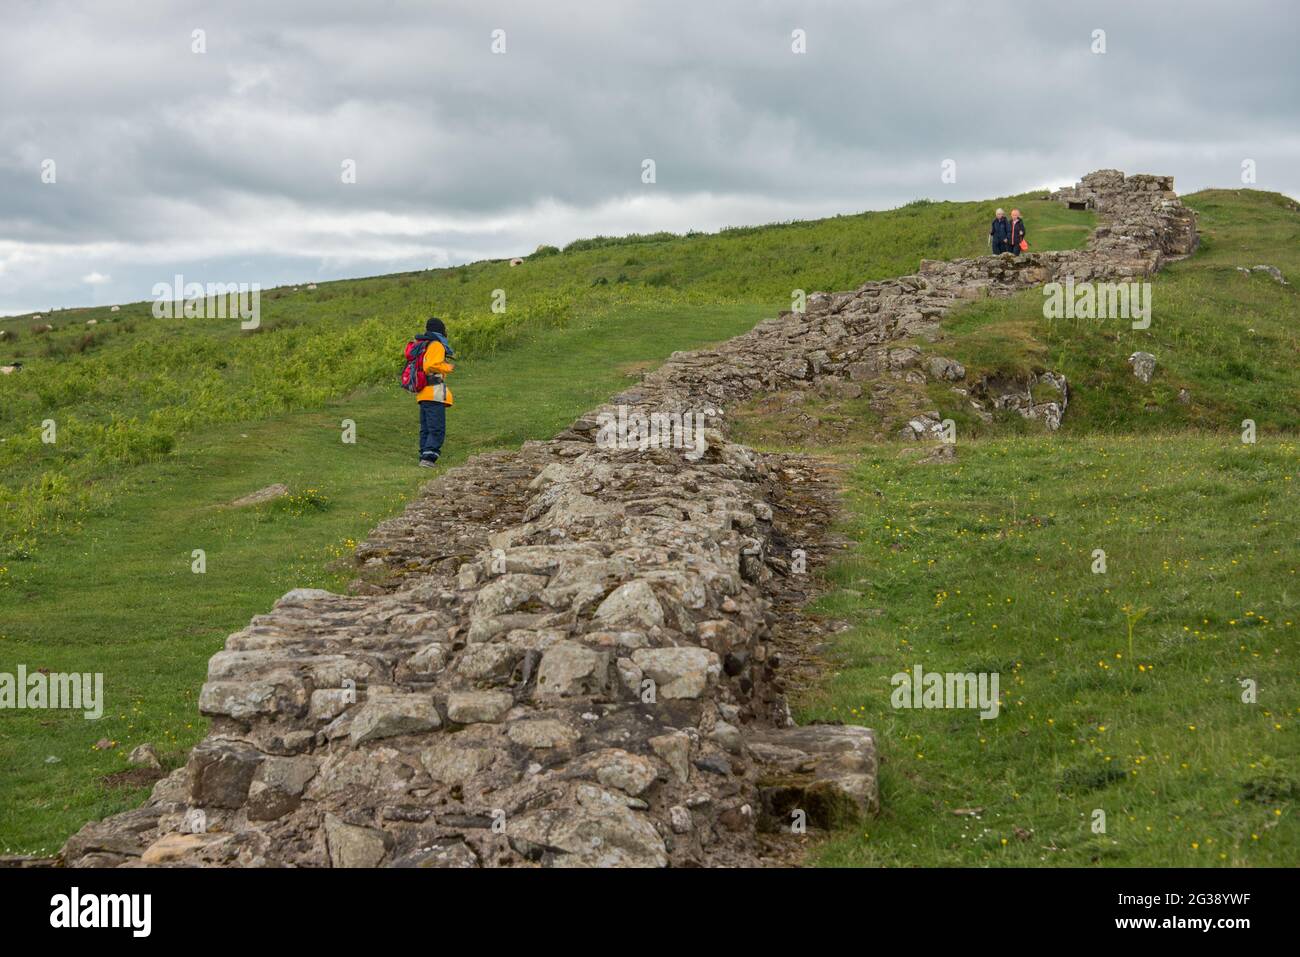 Vestiges d'un segment du mur d'Hadrien, l'ancien mur frontalier romain traversant le nord de l'Angleterre, sur les falaises de Sewingshields Crags près de Milecastle 35 à l'est du fort romain Housesteads. Longeant l'ensemble du site classé au patrimoine mondial de l'UNESCO, le chemin du mur d'Hadrien est l'un des sentiers de randonnée les plus populaires d'Angleterre. Banque D'Images